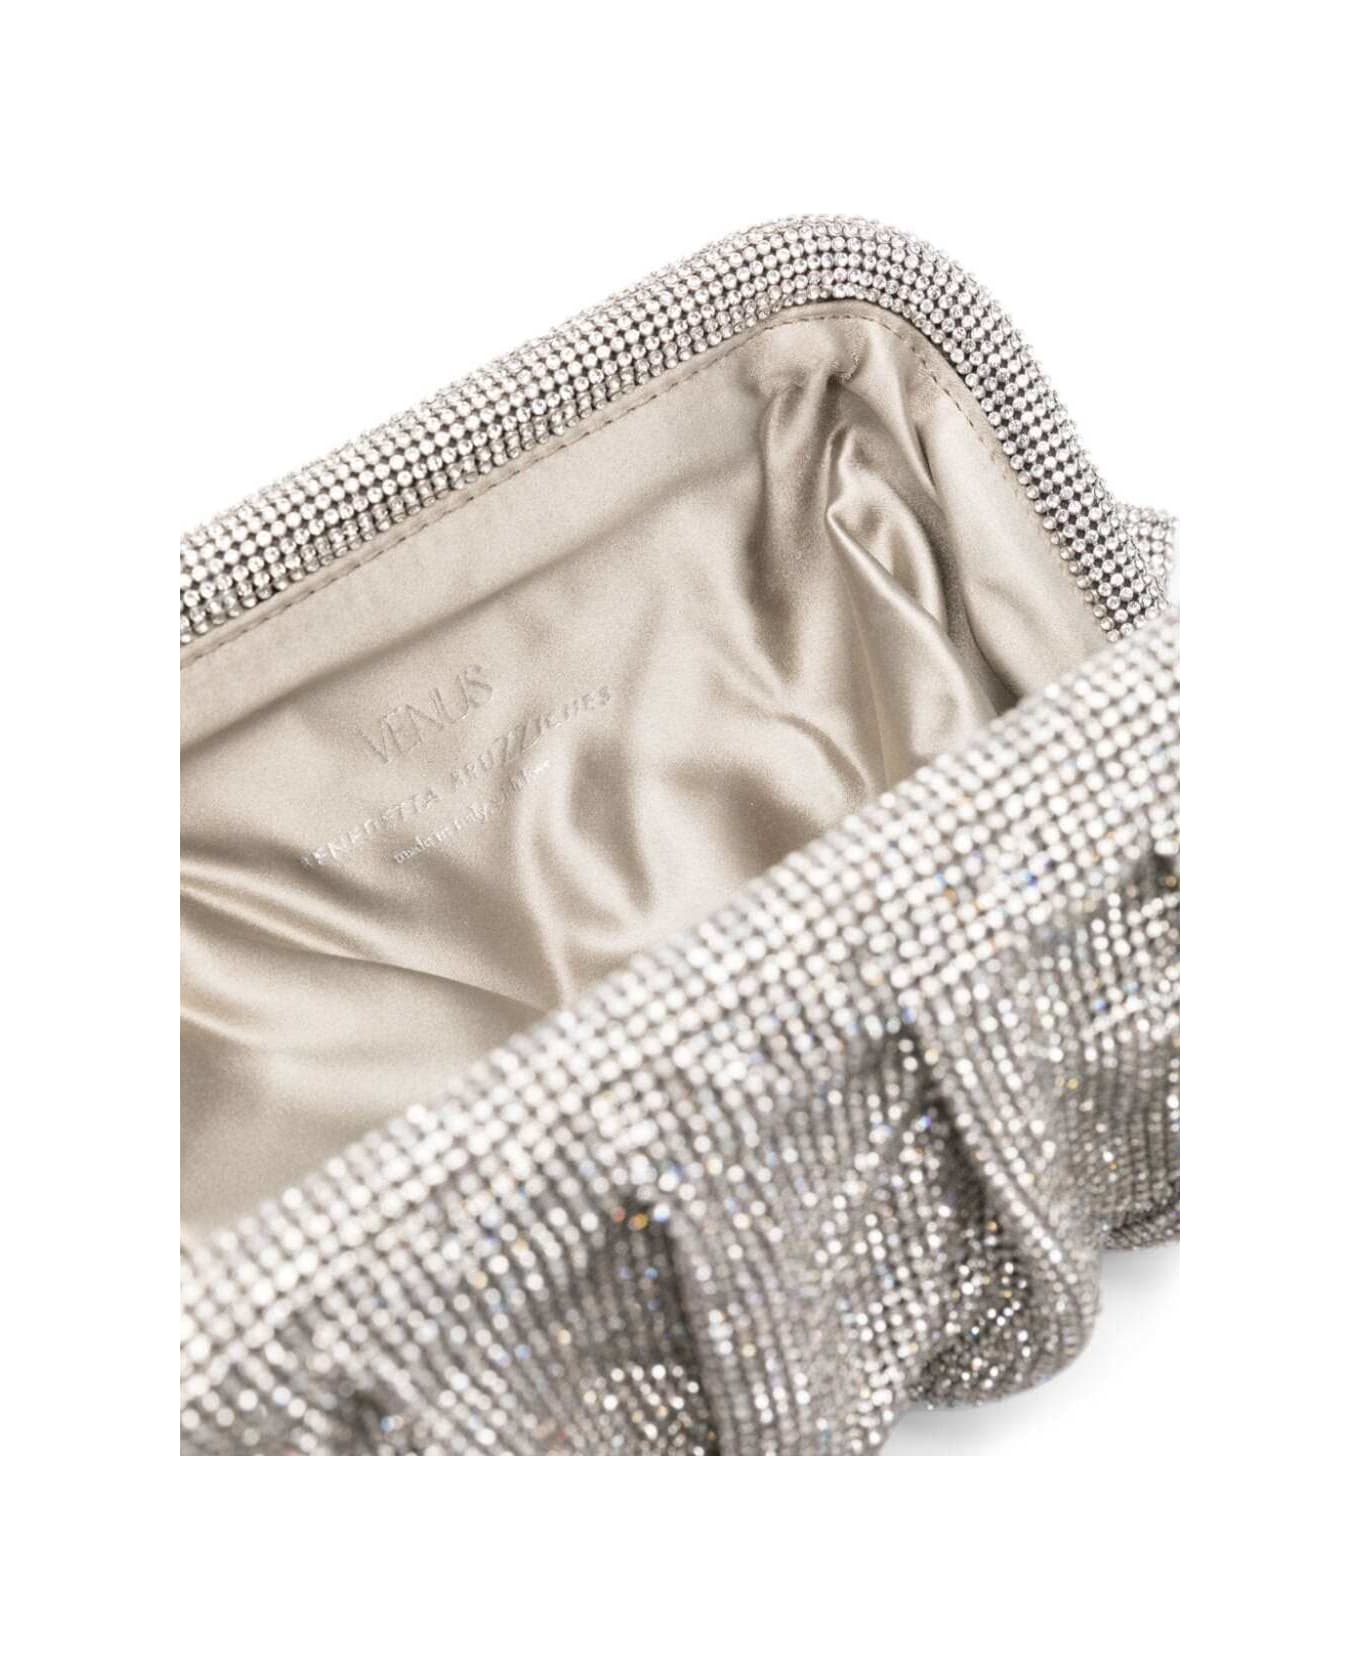 Benedetta Bruzziches 'venus La Grande' Silver Clutch Bag In Fabric With Allover Crystals Woman - Metallic クラッチバッグ